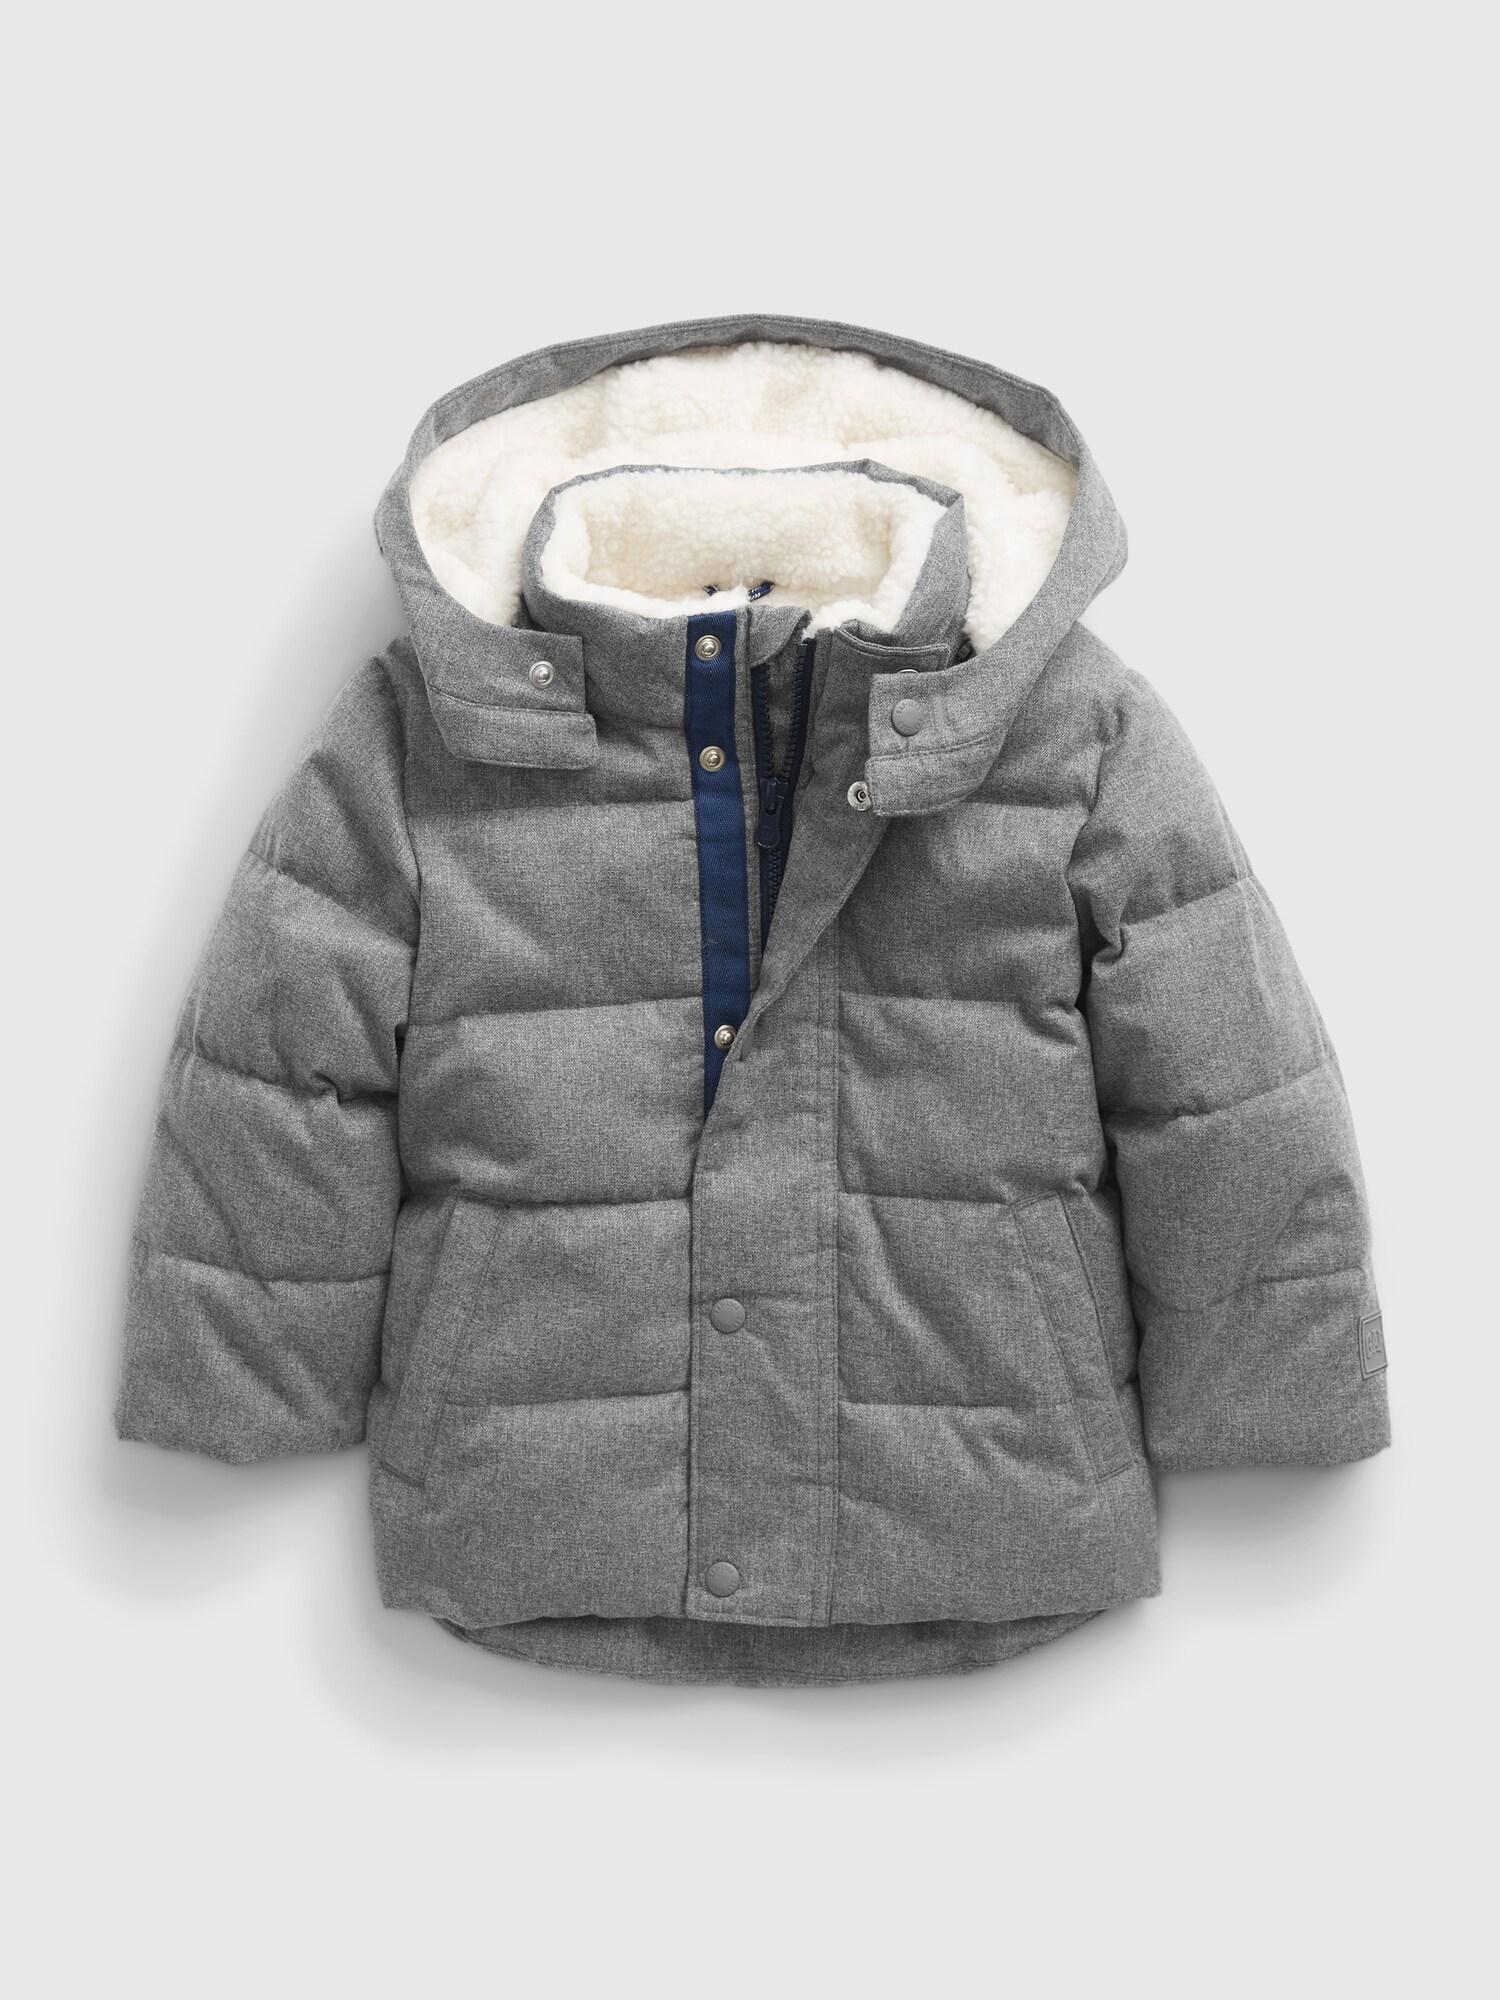 Levně GAP Dětská bundawarmest jacket - Kluci